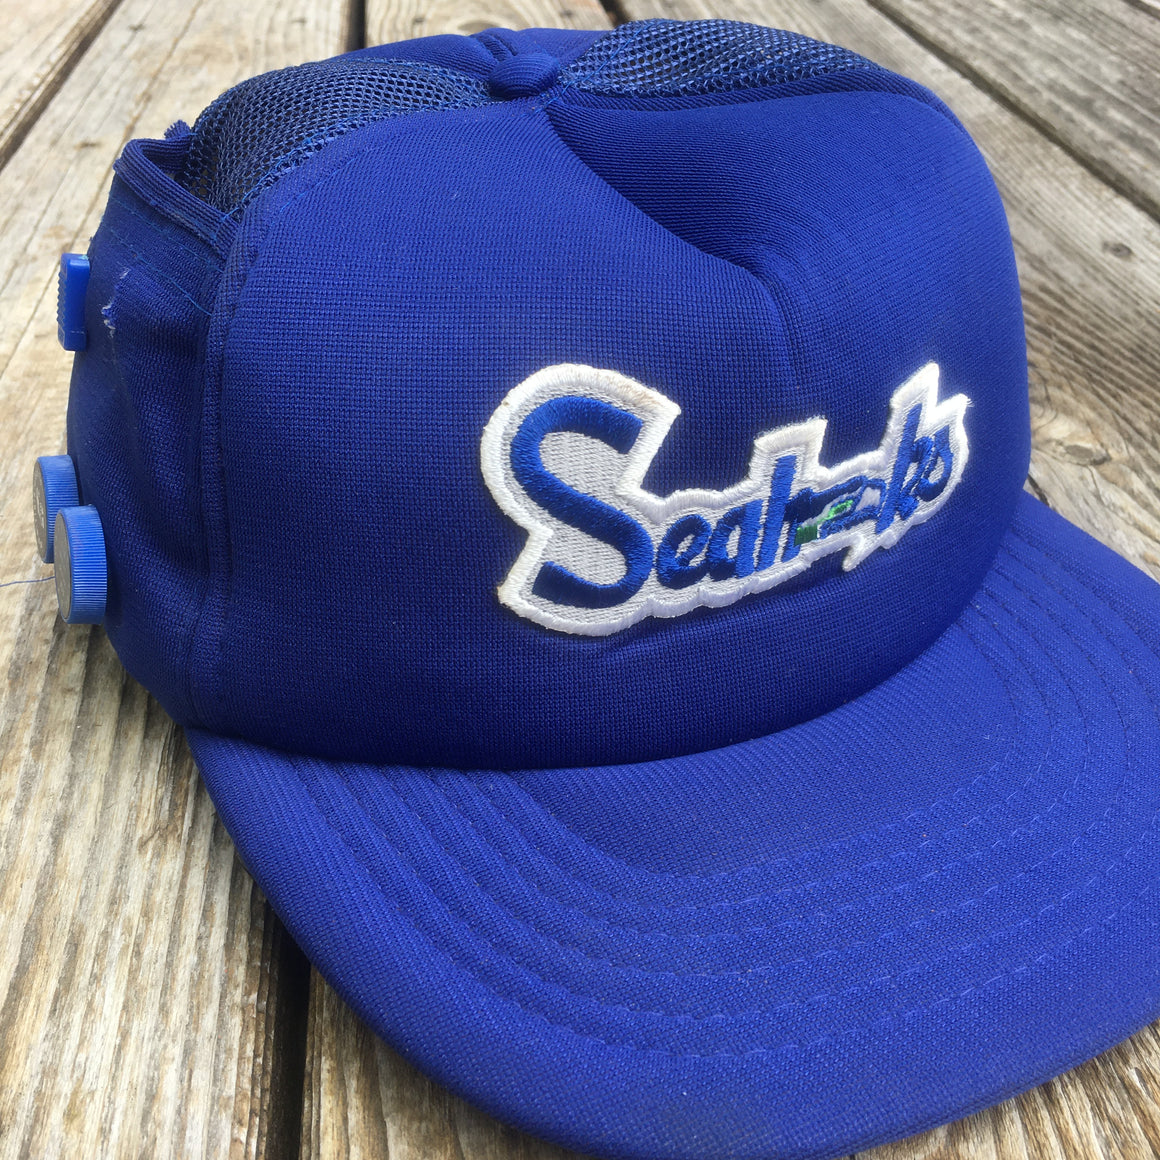 Seattle Seahawks radio hat